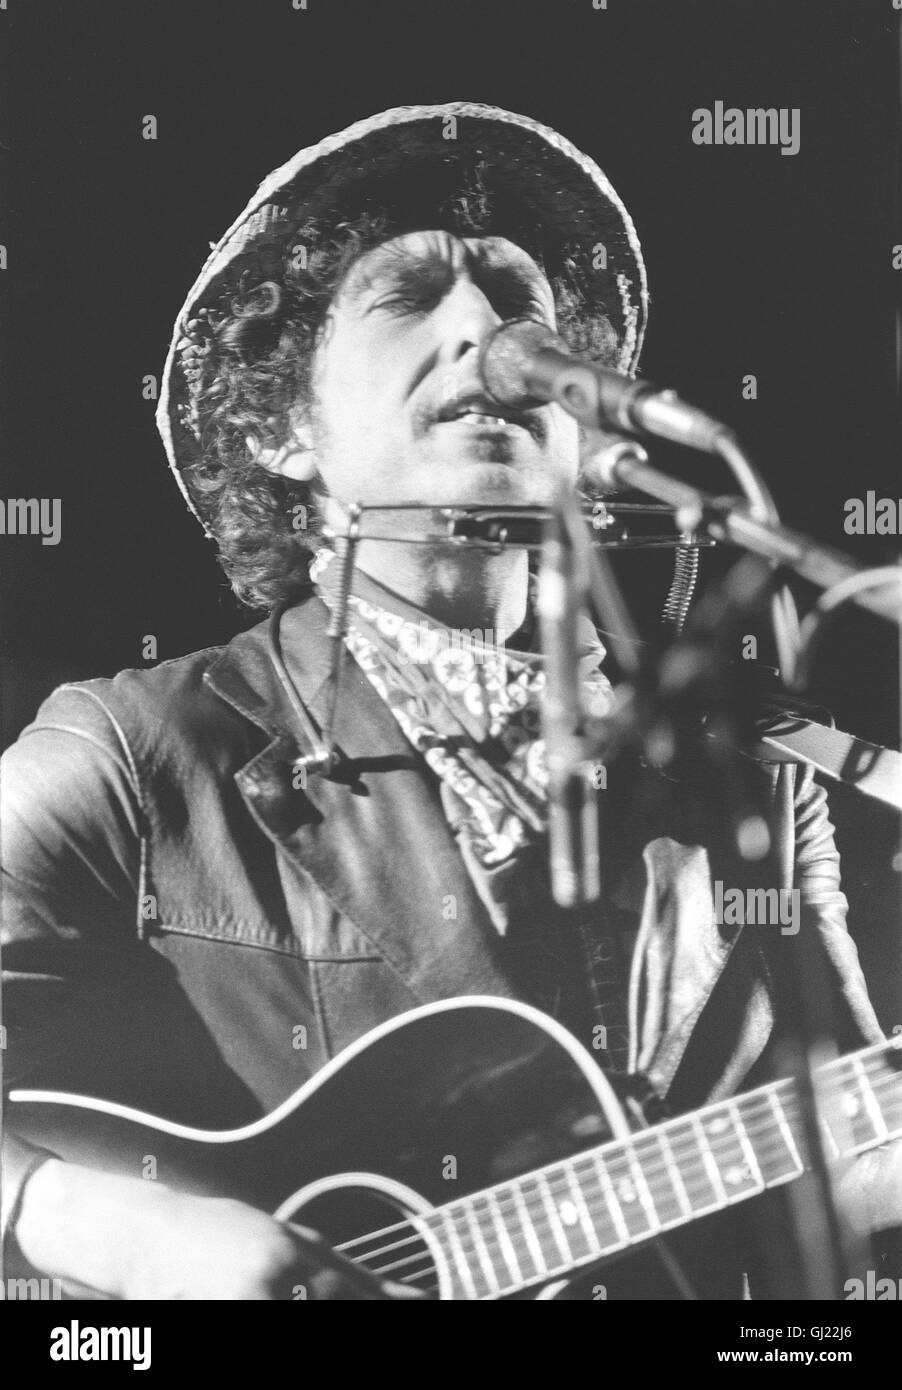 BOB DYLAN - Les choses ont changé (PAS) Bild : Bob Dylan bei einem Konzert in den 1980er Jahren. Rocklegenden älter werden Auch. BOB DYLAN wurde am 24. Mai 2001 - 60 Jahre alt. Über 500 chansons hat er seit den frühen 60er Jahren geschrieben, knapp 50 Alben eingespielt. Er begann als der spröde Star der gegen Création Vietnam und der Jugend, aufbegehrenden genius loci von Woodstock, wo er lange lebte, aber nicht auftrat. Irgendwann in den 80er Jahren begann Dylan dann weltweit aufzutreten. Bis heute. Wenn Sie werden, altern Legenden dekoriert : 2000 fiel sein im Zusammenhang mit dem Nom Banque D'Images